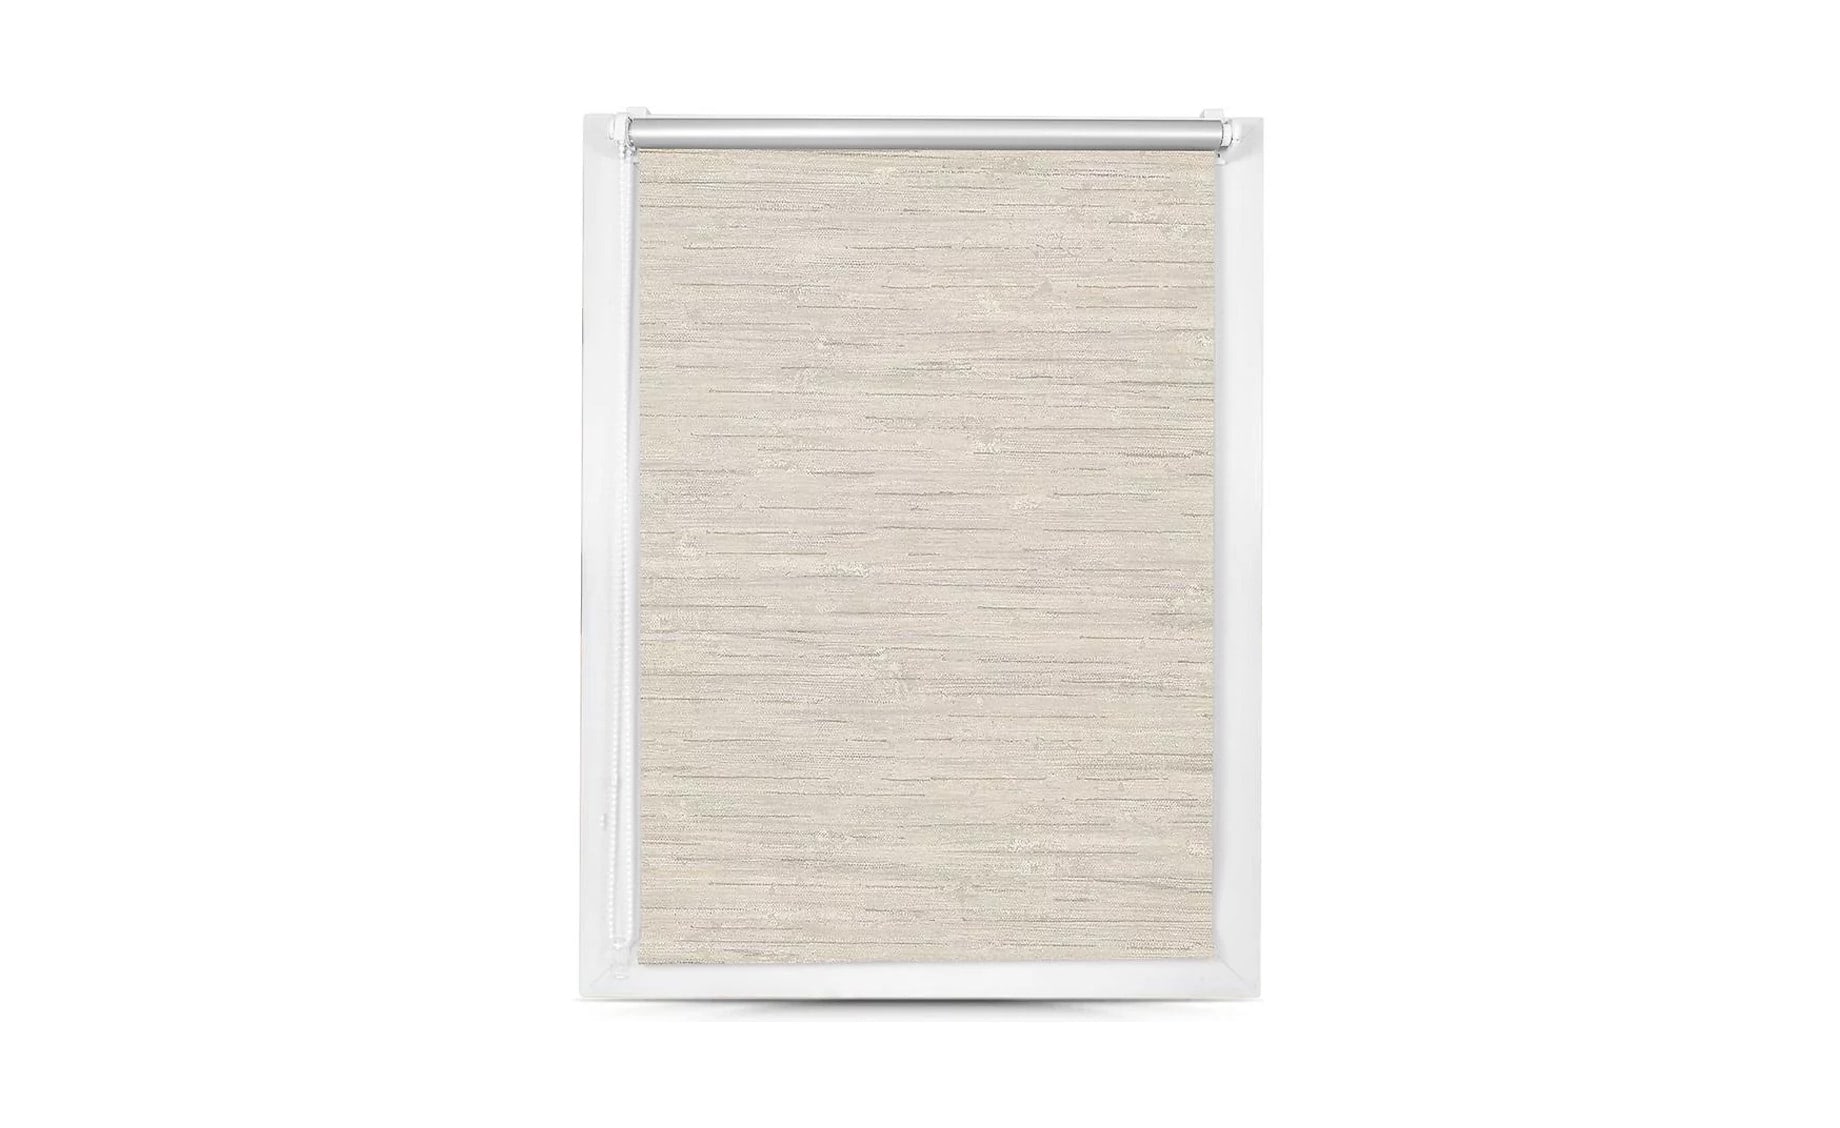 Rolo zavesa Mini Silver, 80X150 cm, bela, SXL-063